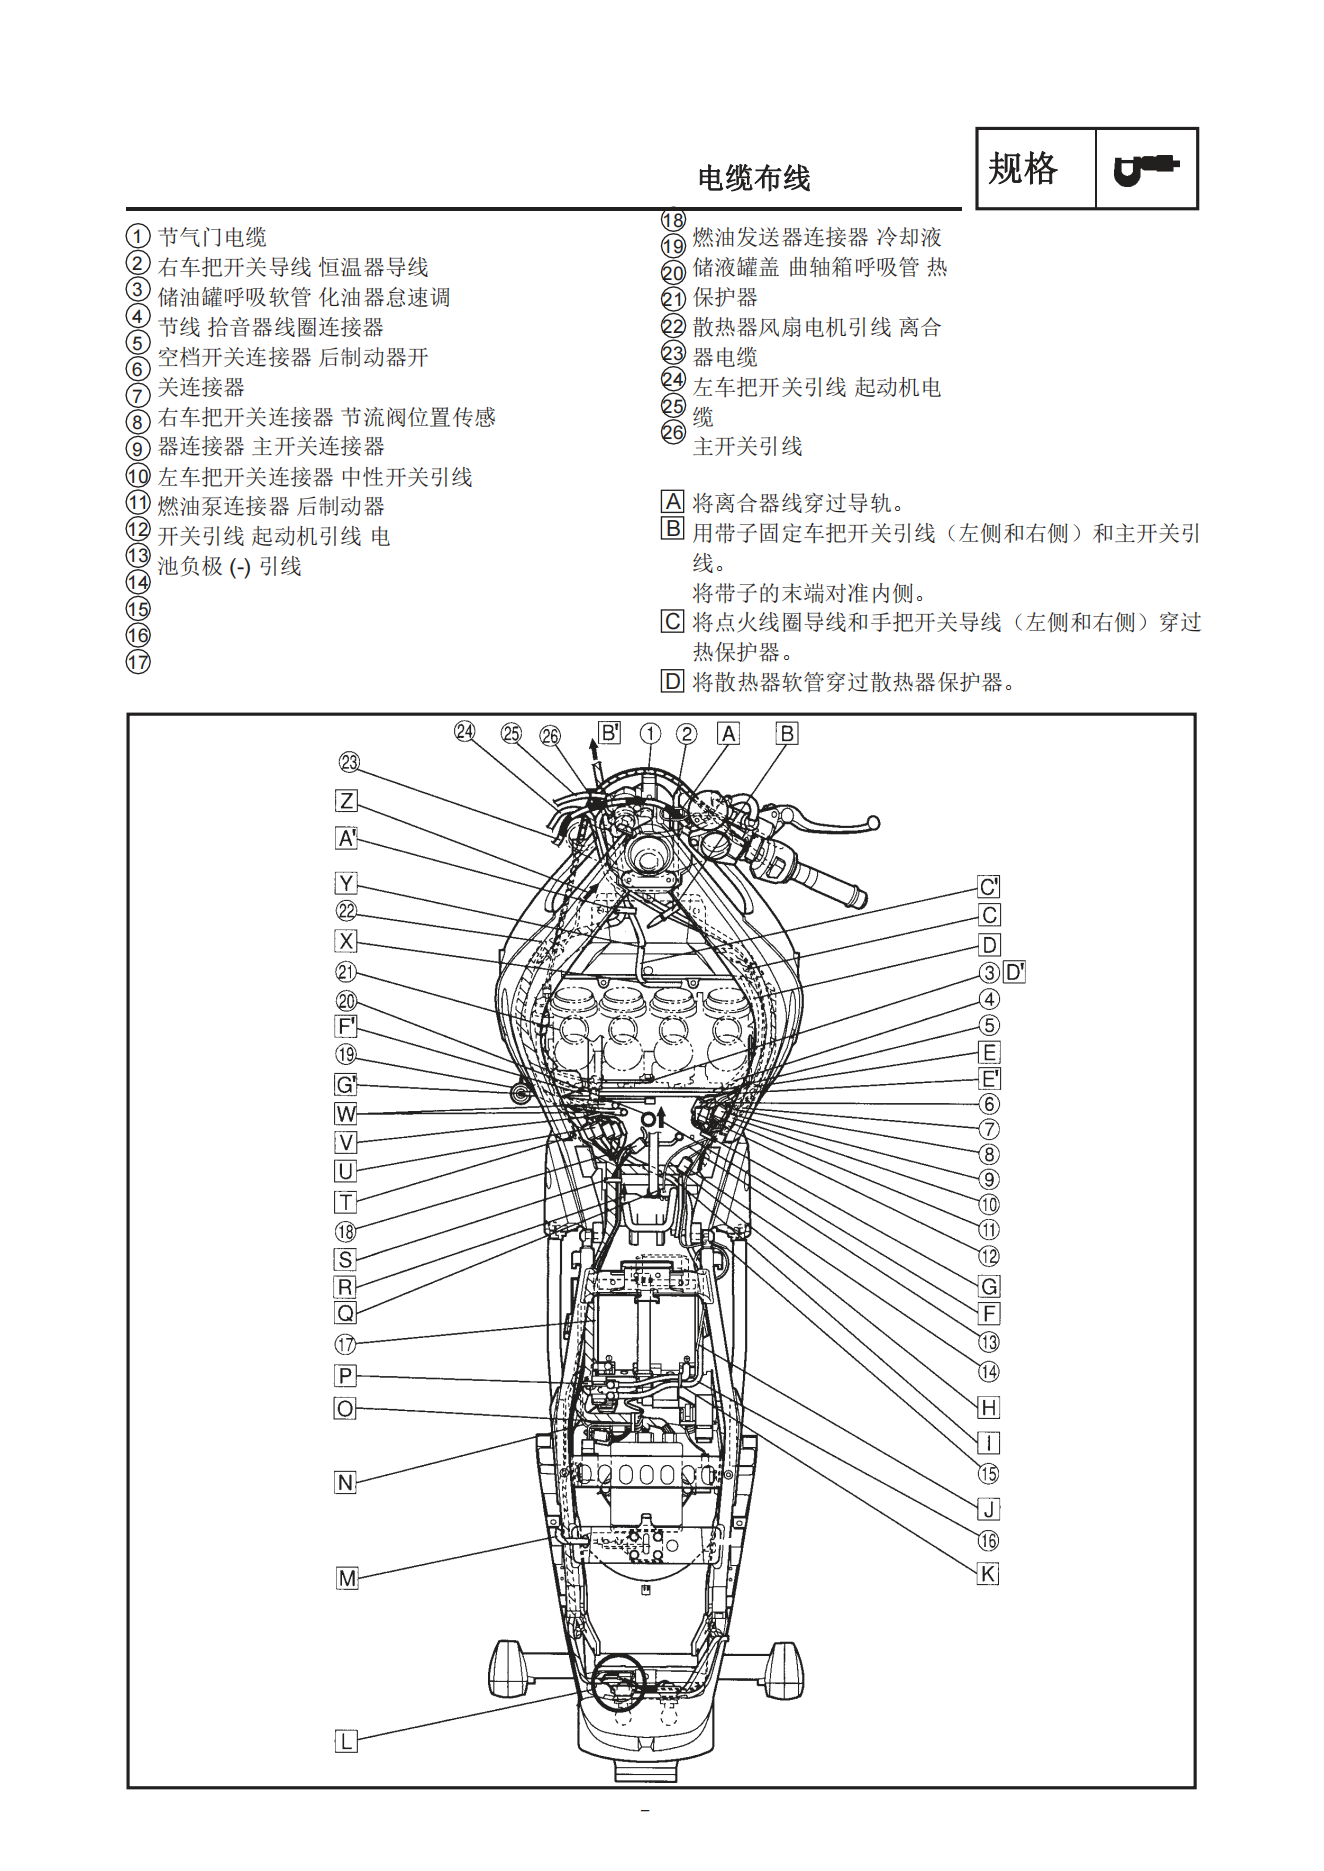 简体中文2000年雅马哈yzfr6雅马哈r6维修补充手册需要和1999-2002年雅马哈r6维修手册一起使用插图2